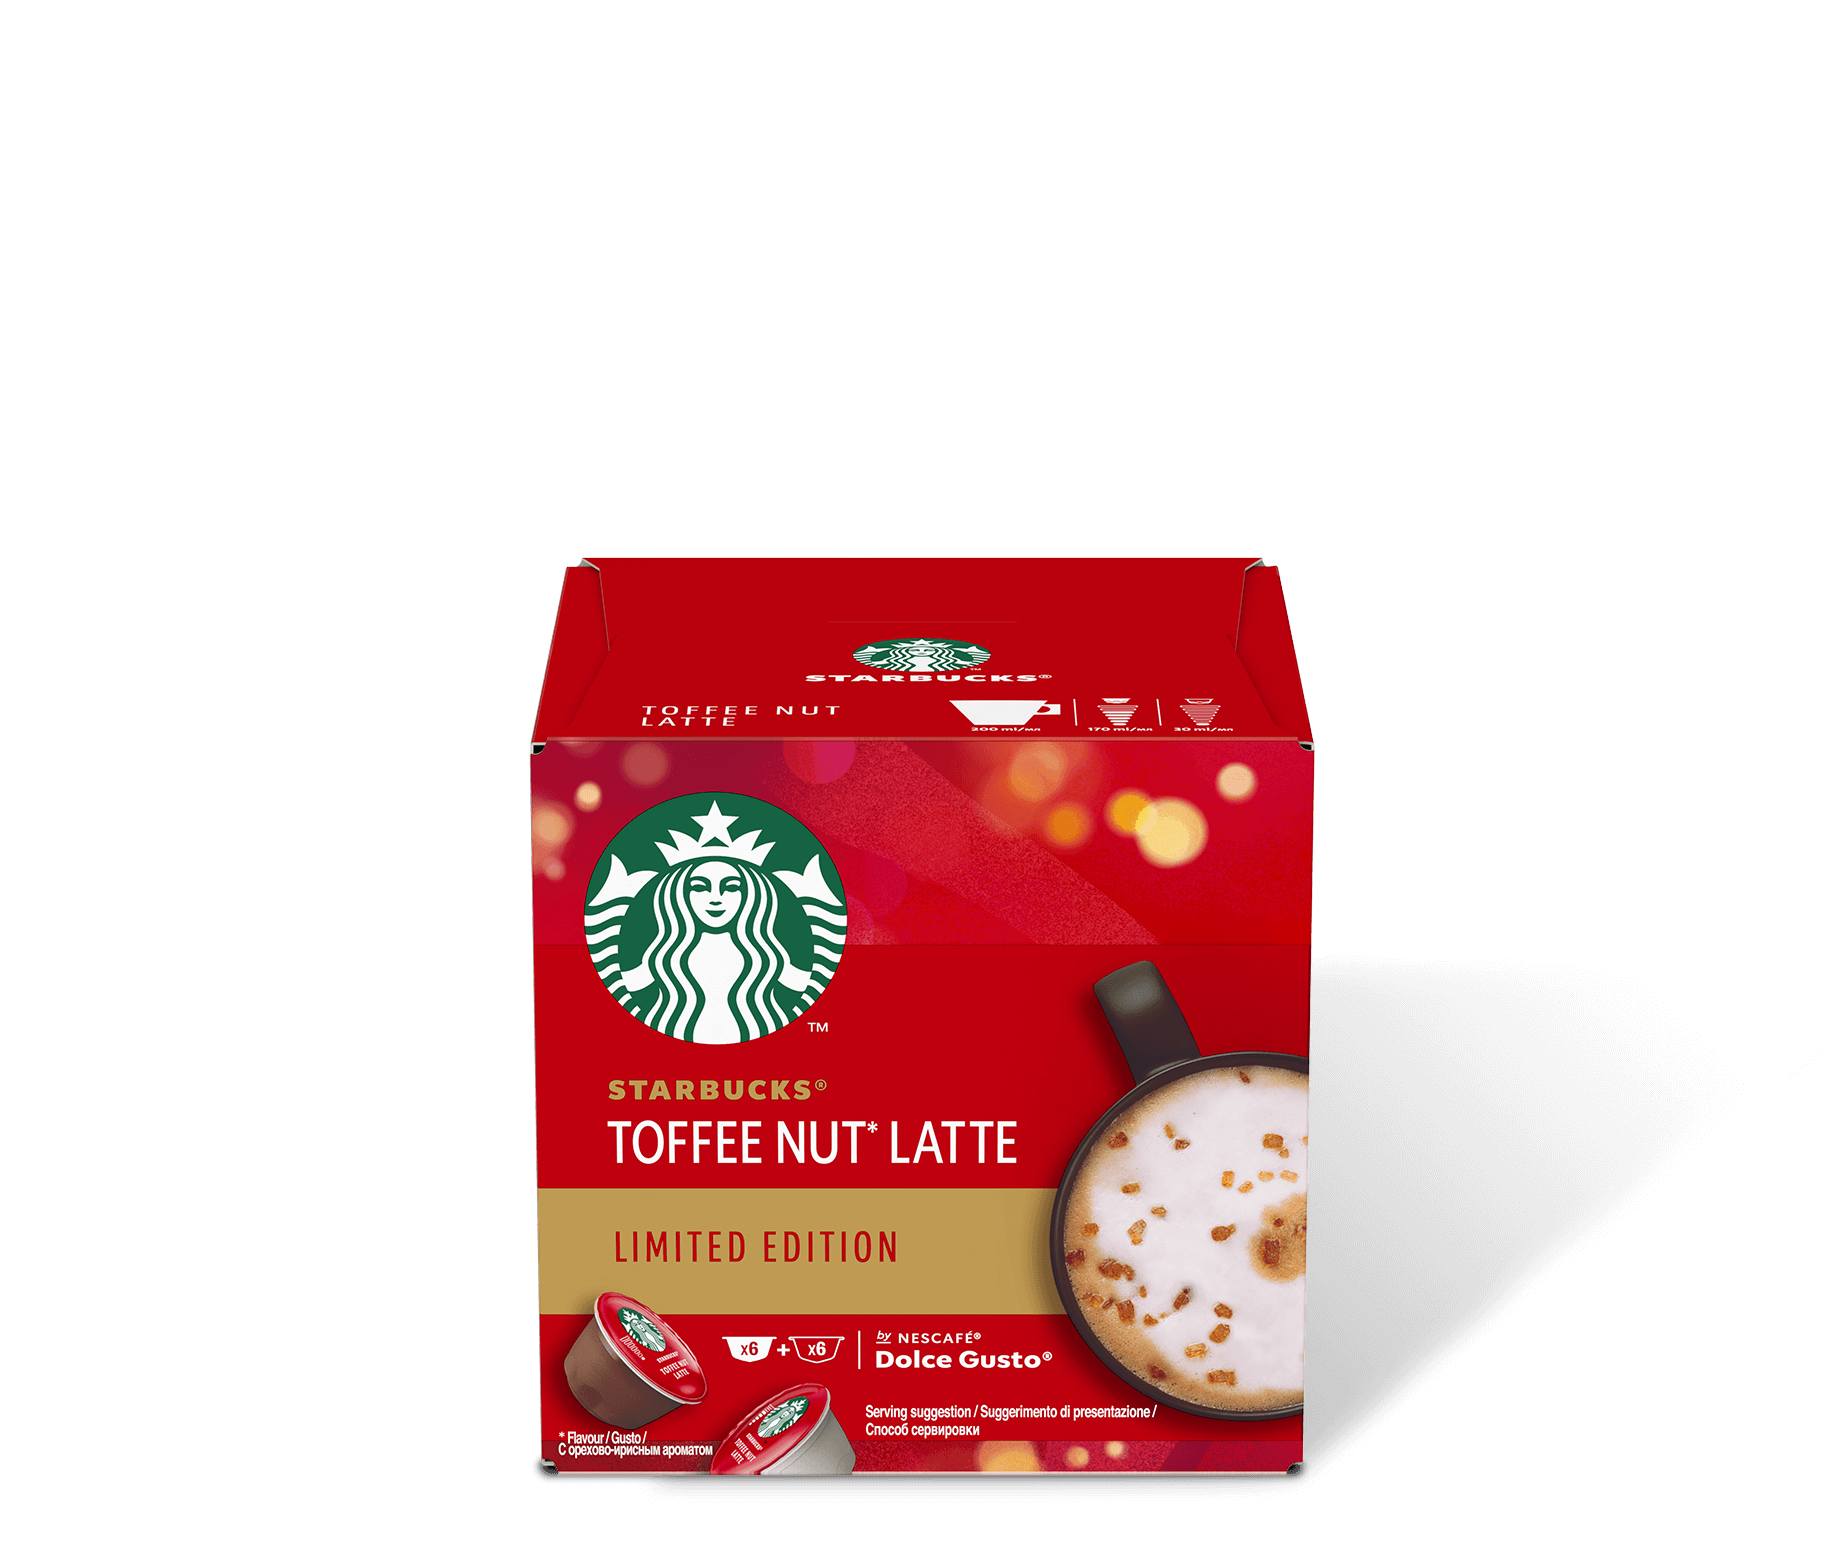 Starbucks® Toffee Nut Latte by NDG